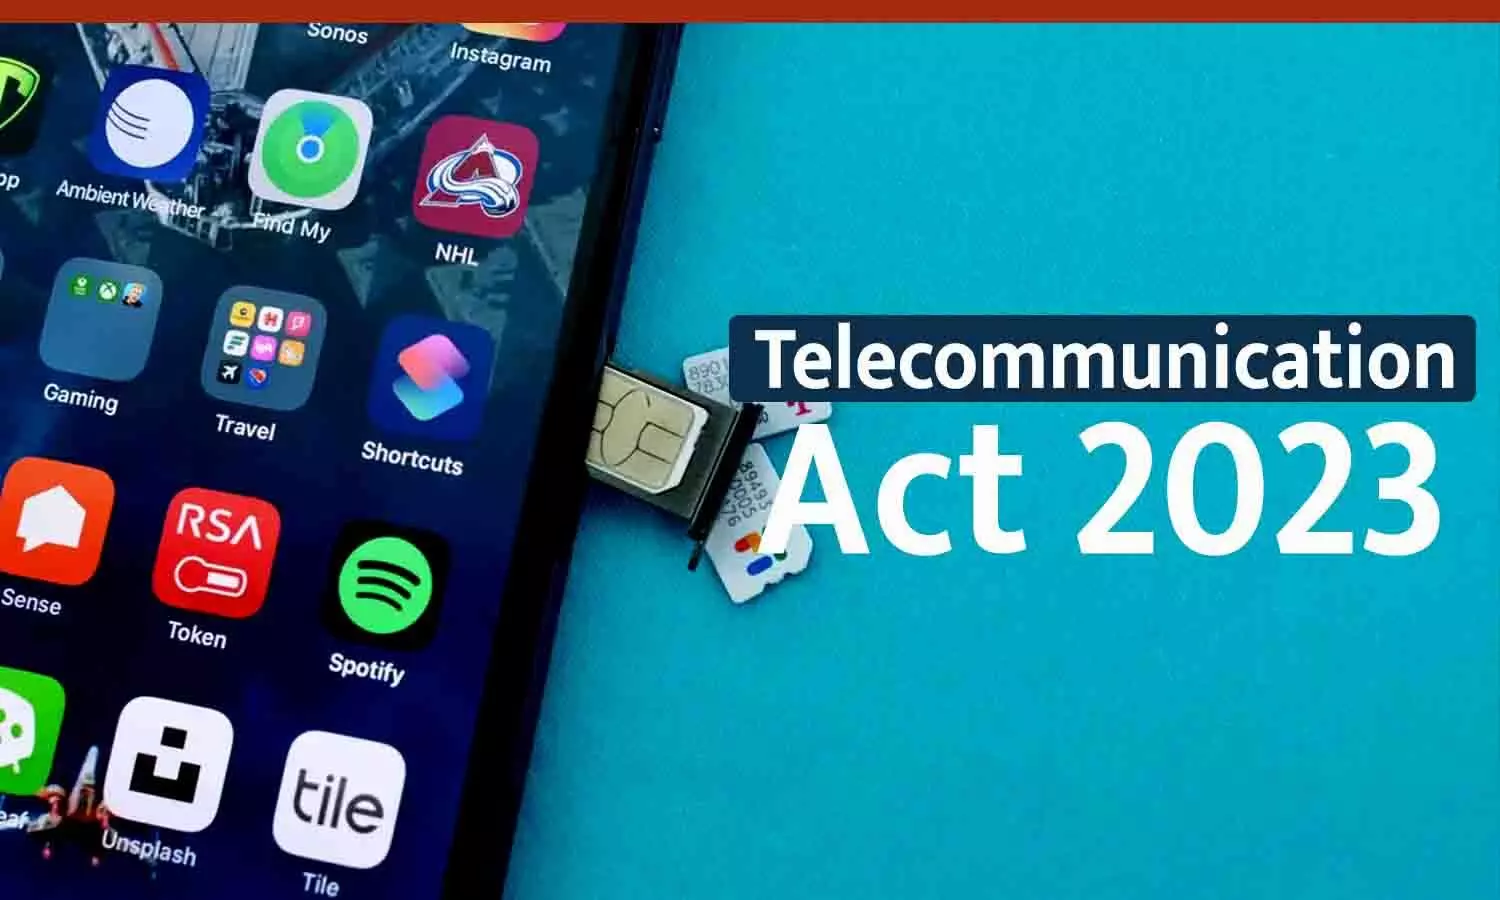 Telecommunication Act 2023